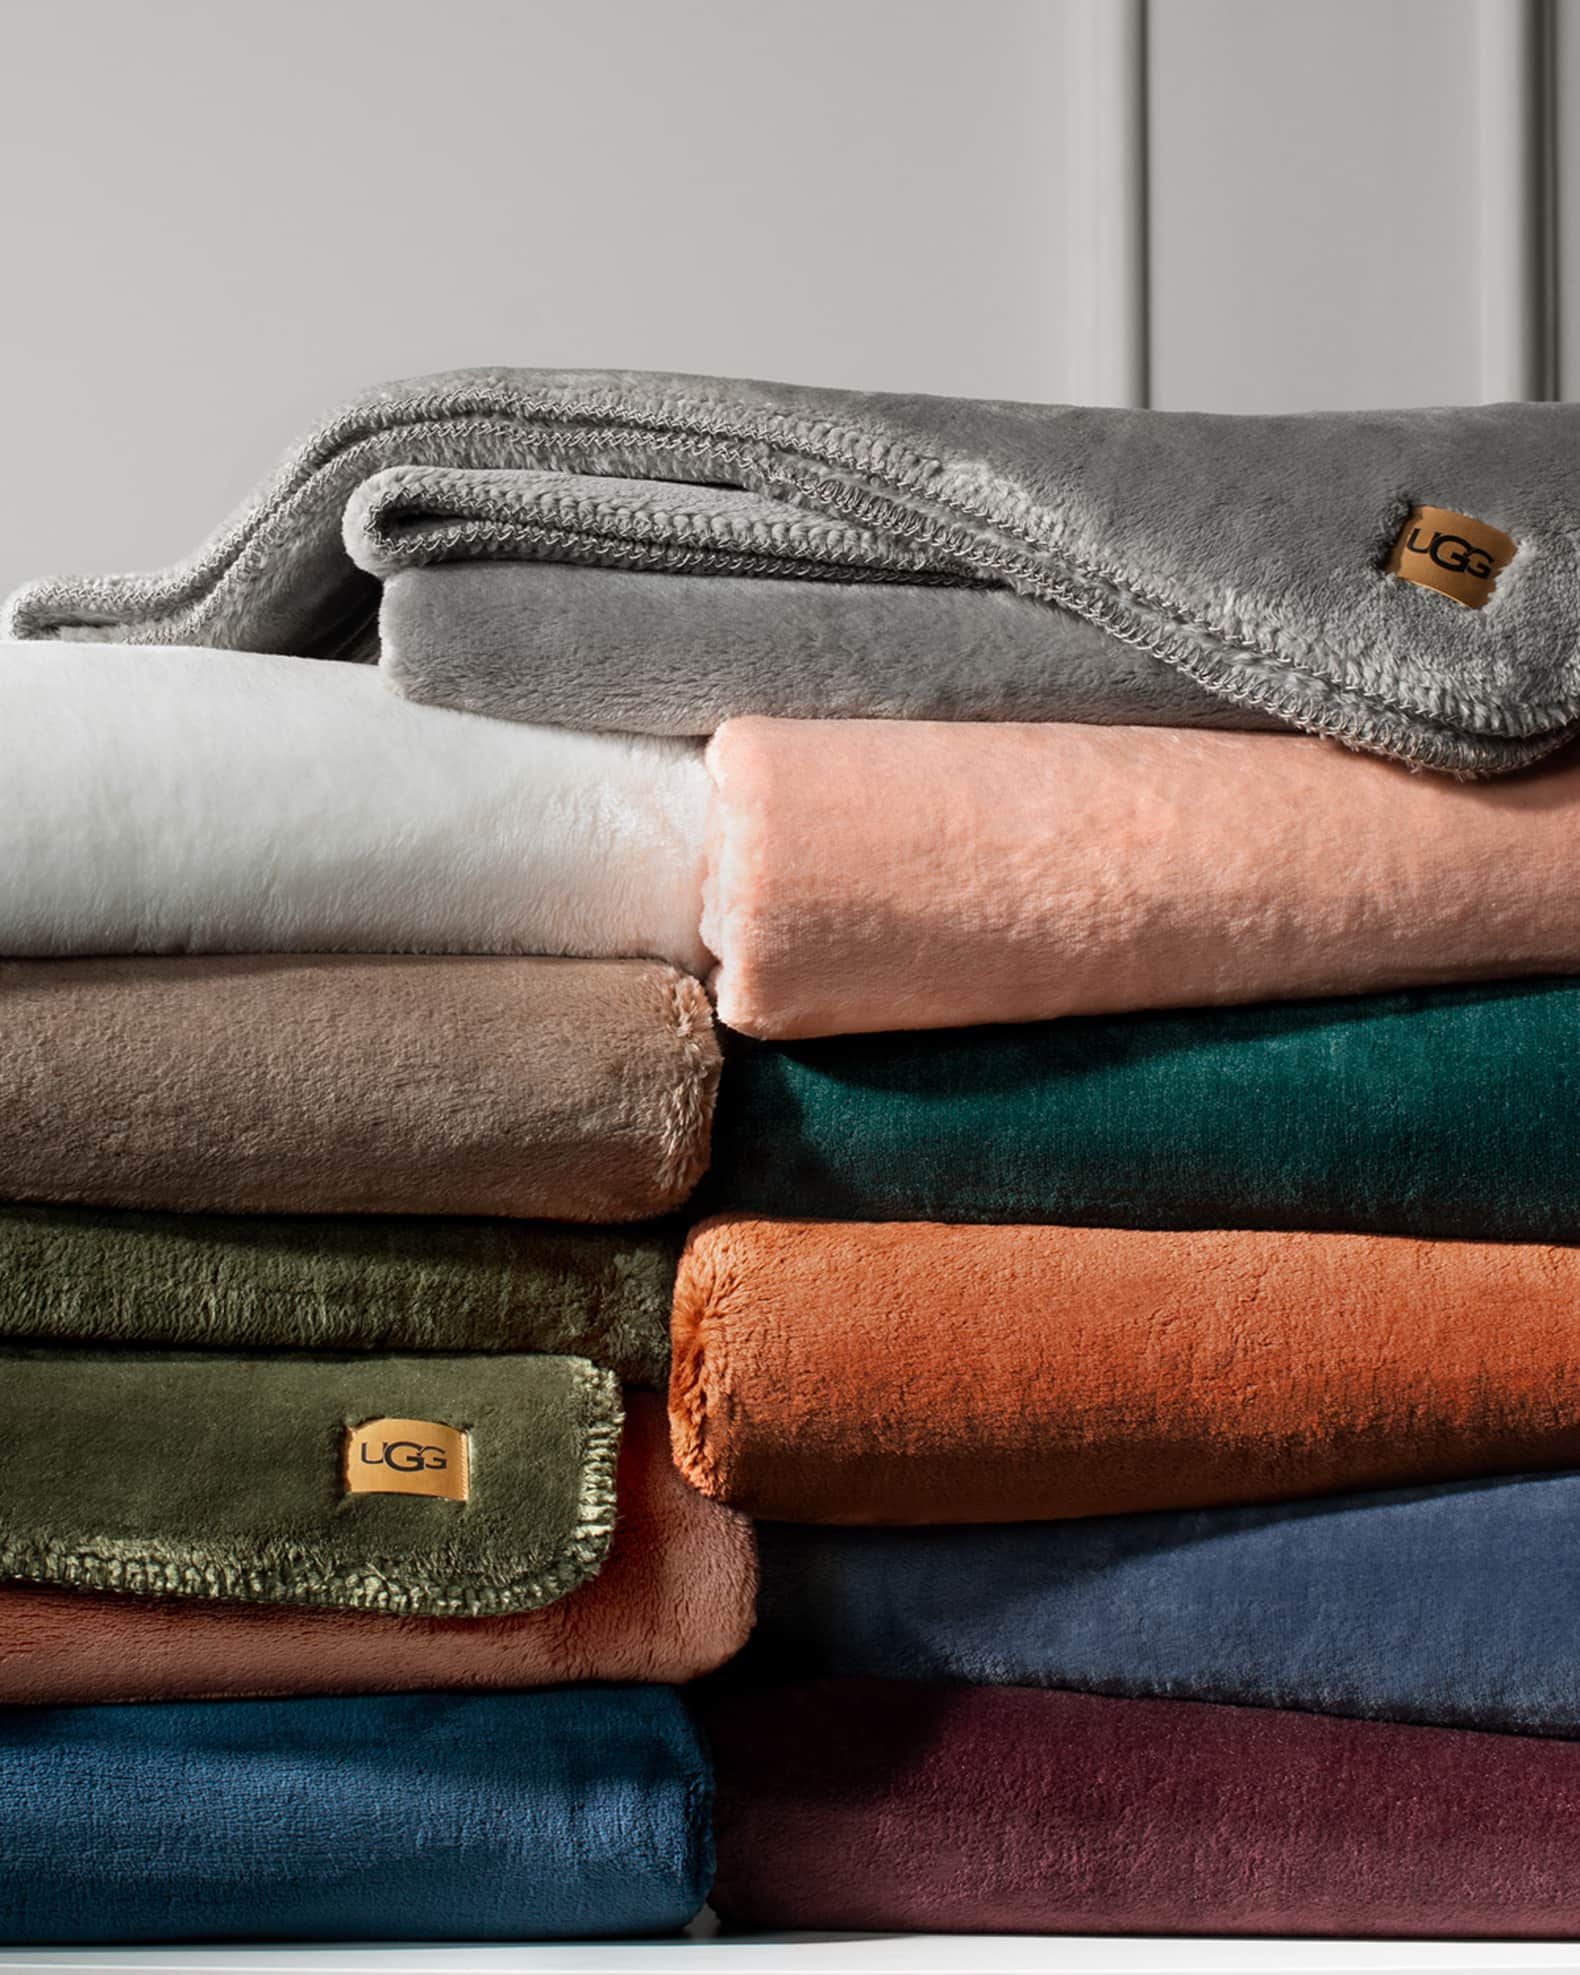 Flannel blankets Louis Vuitton, designer blankets